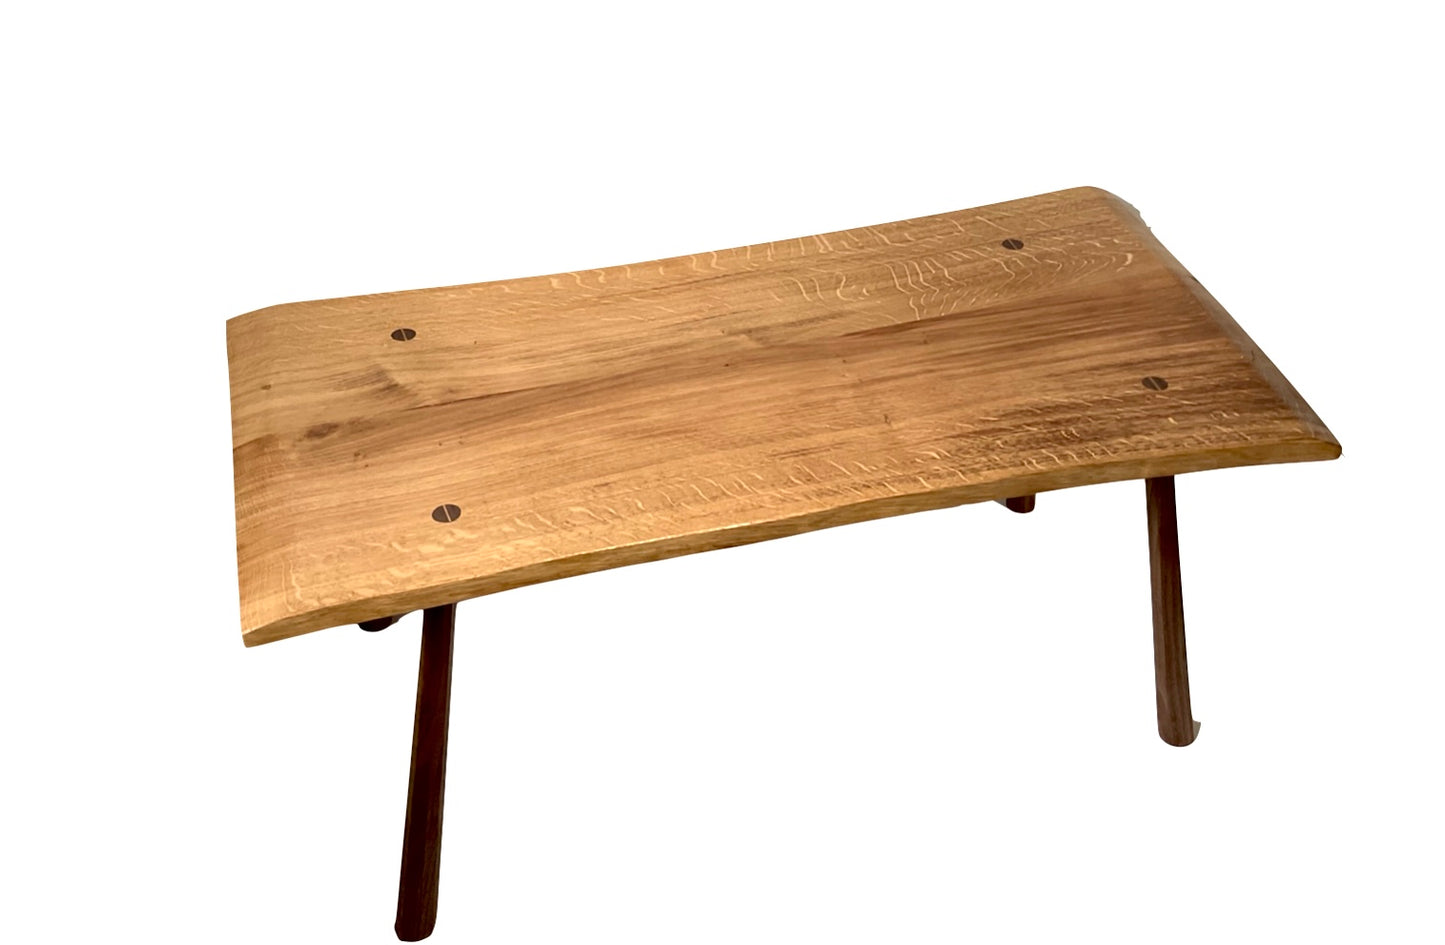 English oak table